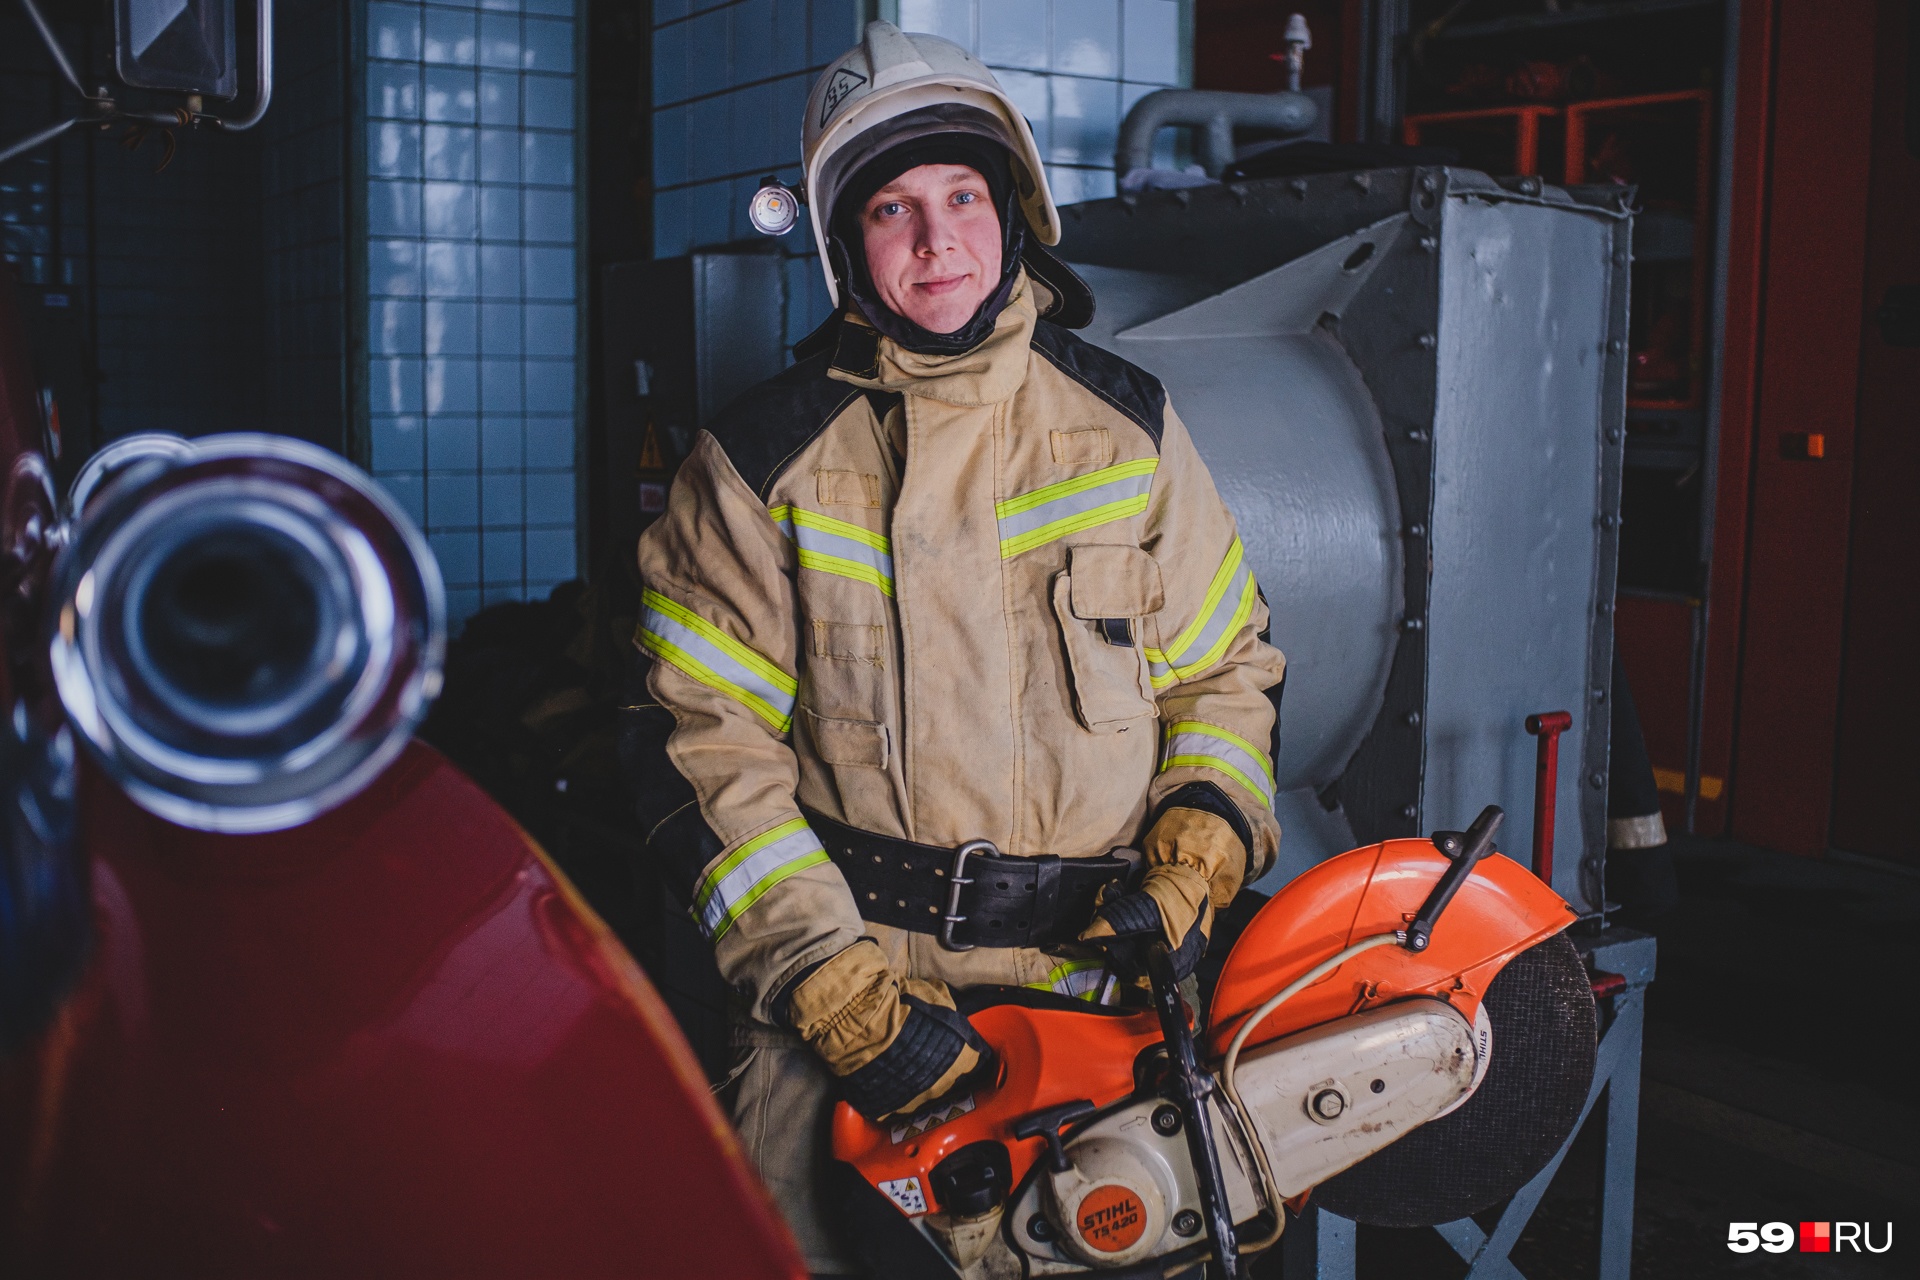 Максим Логинов держит в руках бензорез, который помогает пожарным разрезать стальные двери или тросы